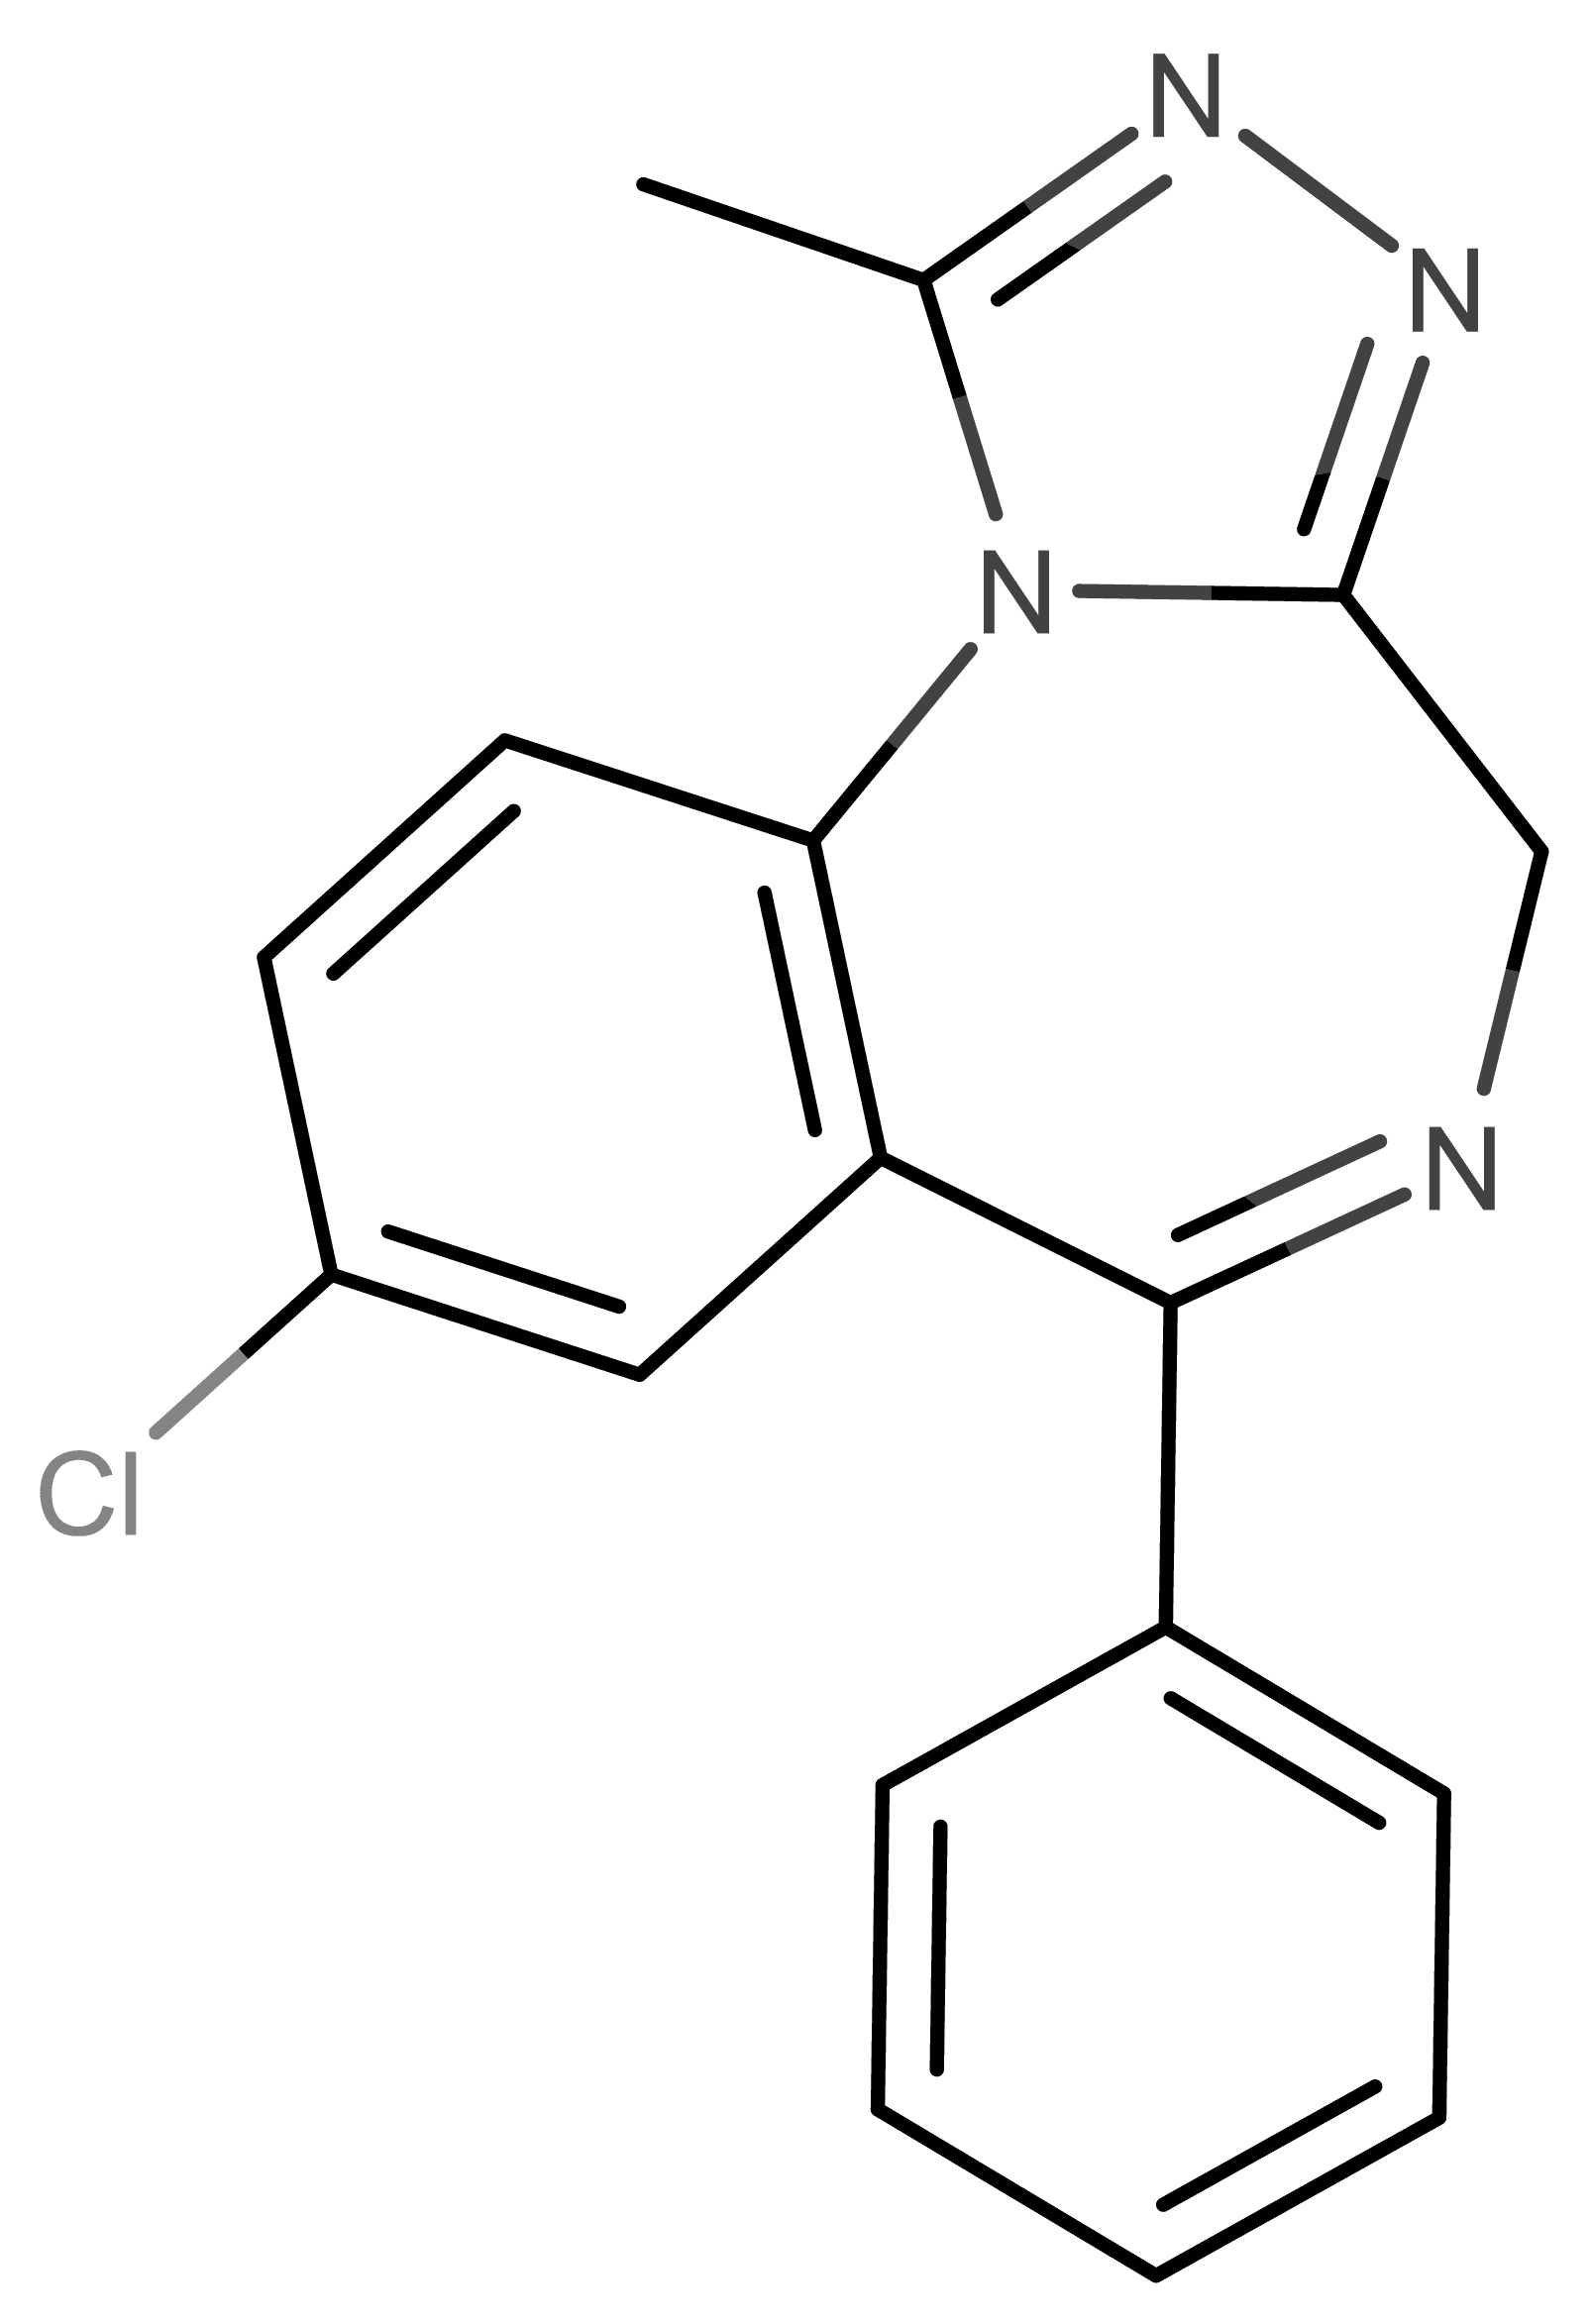 Alprazolam molecular scheme